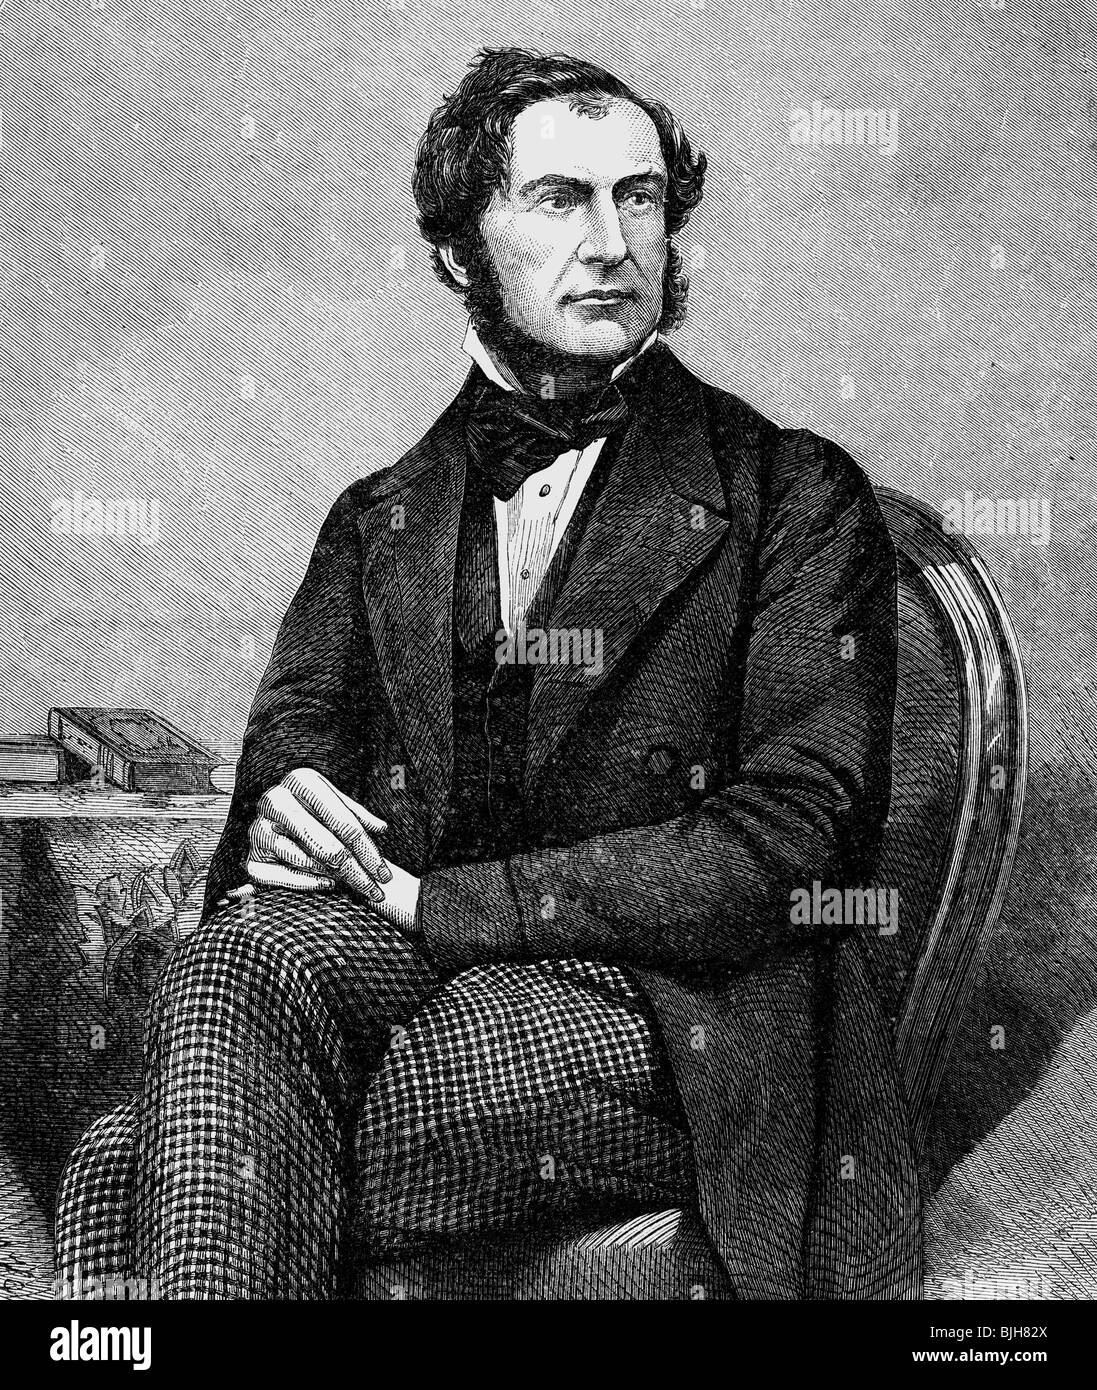 Gladstone, William Eward, 29.12.1809 - 19.5.1898, político británico (Lib.), Canciller del Tesoro 18.6.1859 - , Foto de stock